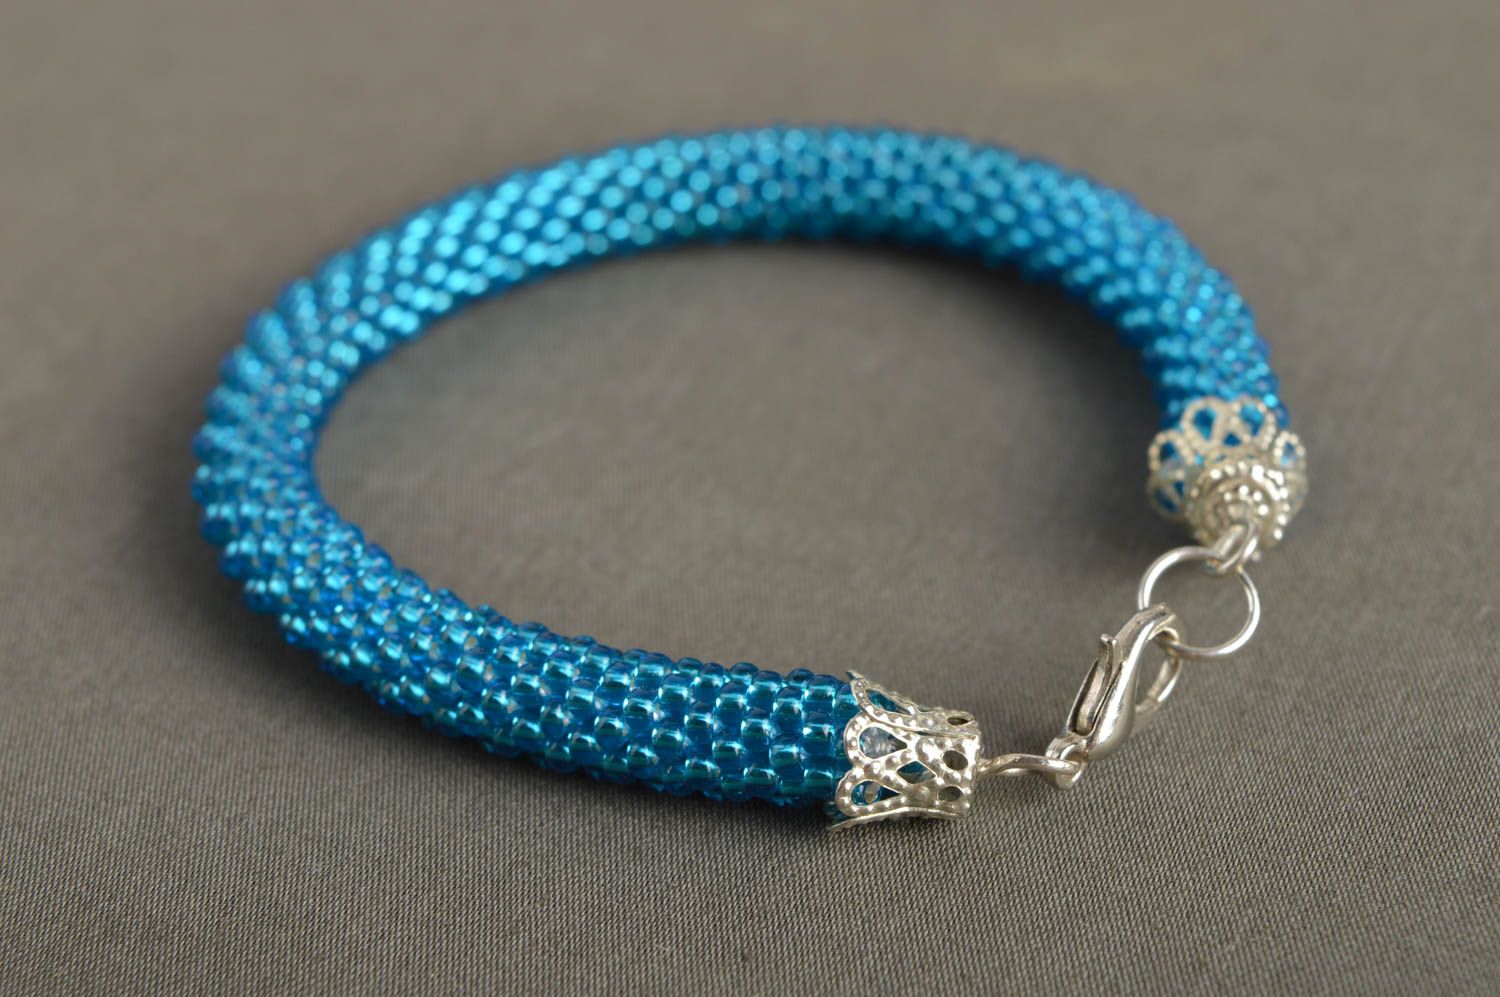 Handmade blue beaded bracelet elegant wrist bracelet feminine accessory photo 1